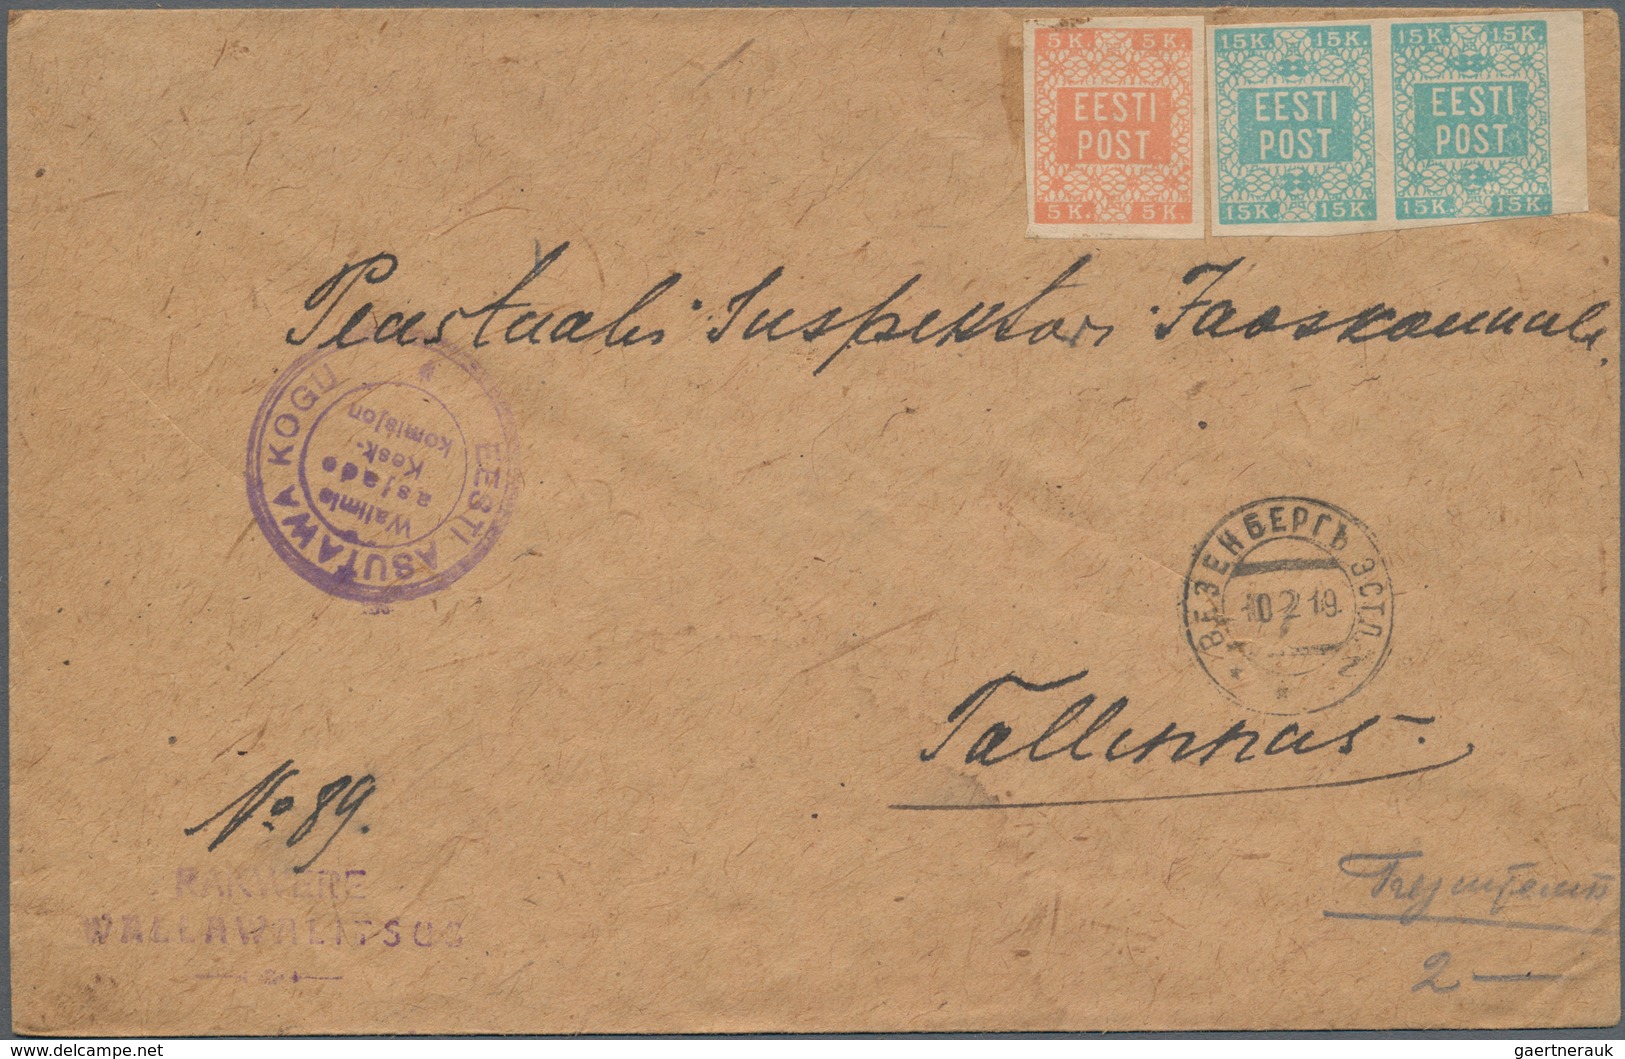 Estland: 1919, Letter From Wesenberg (Rakwere) To Tallinn On 10.2.19. - Estland